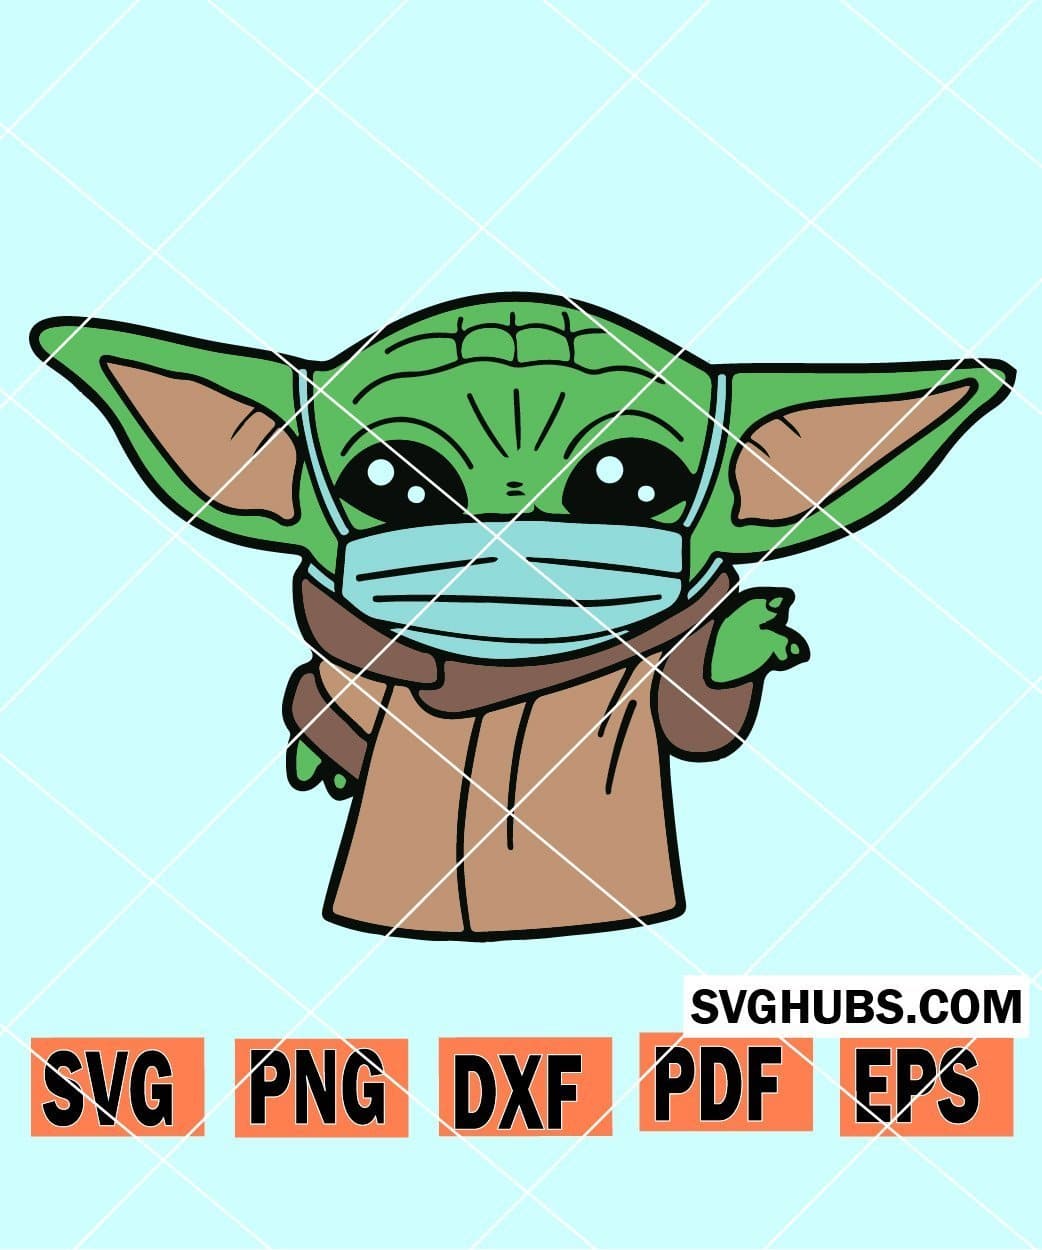 Baby Yoda face mask SVG, Baby Yoda SVG, Star Wars SVG, Baby Yoda